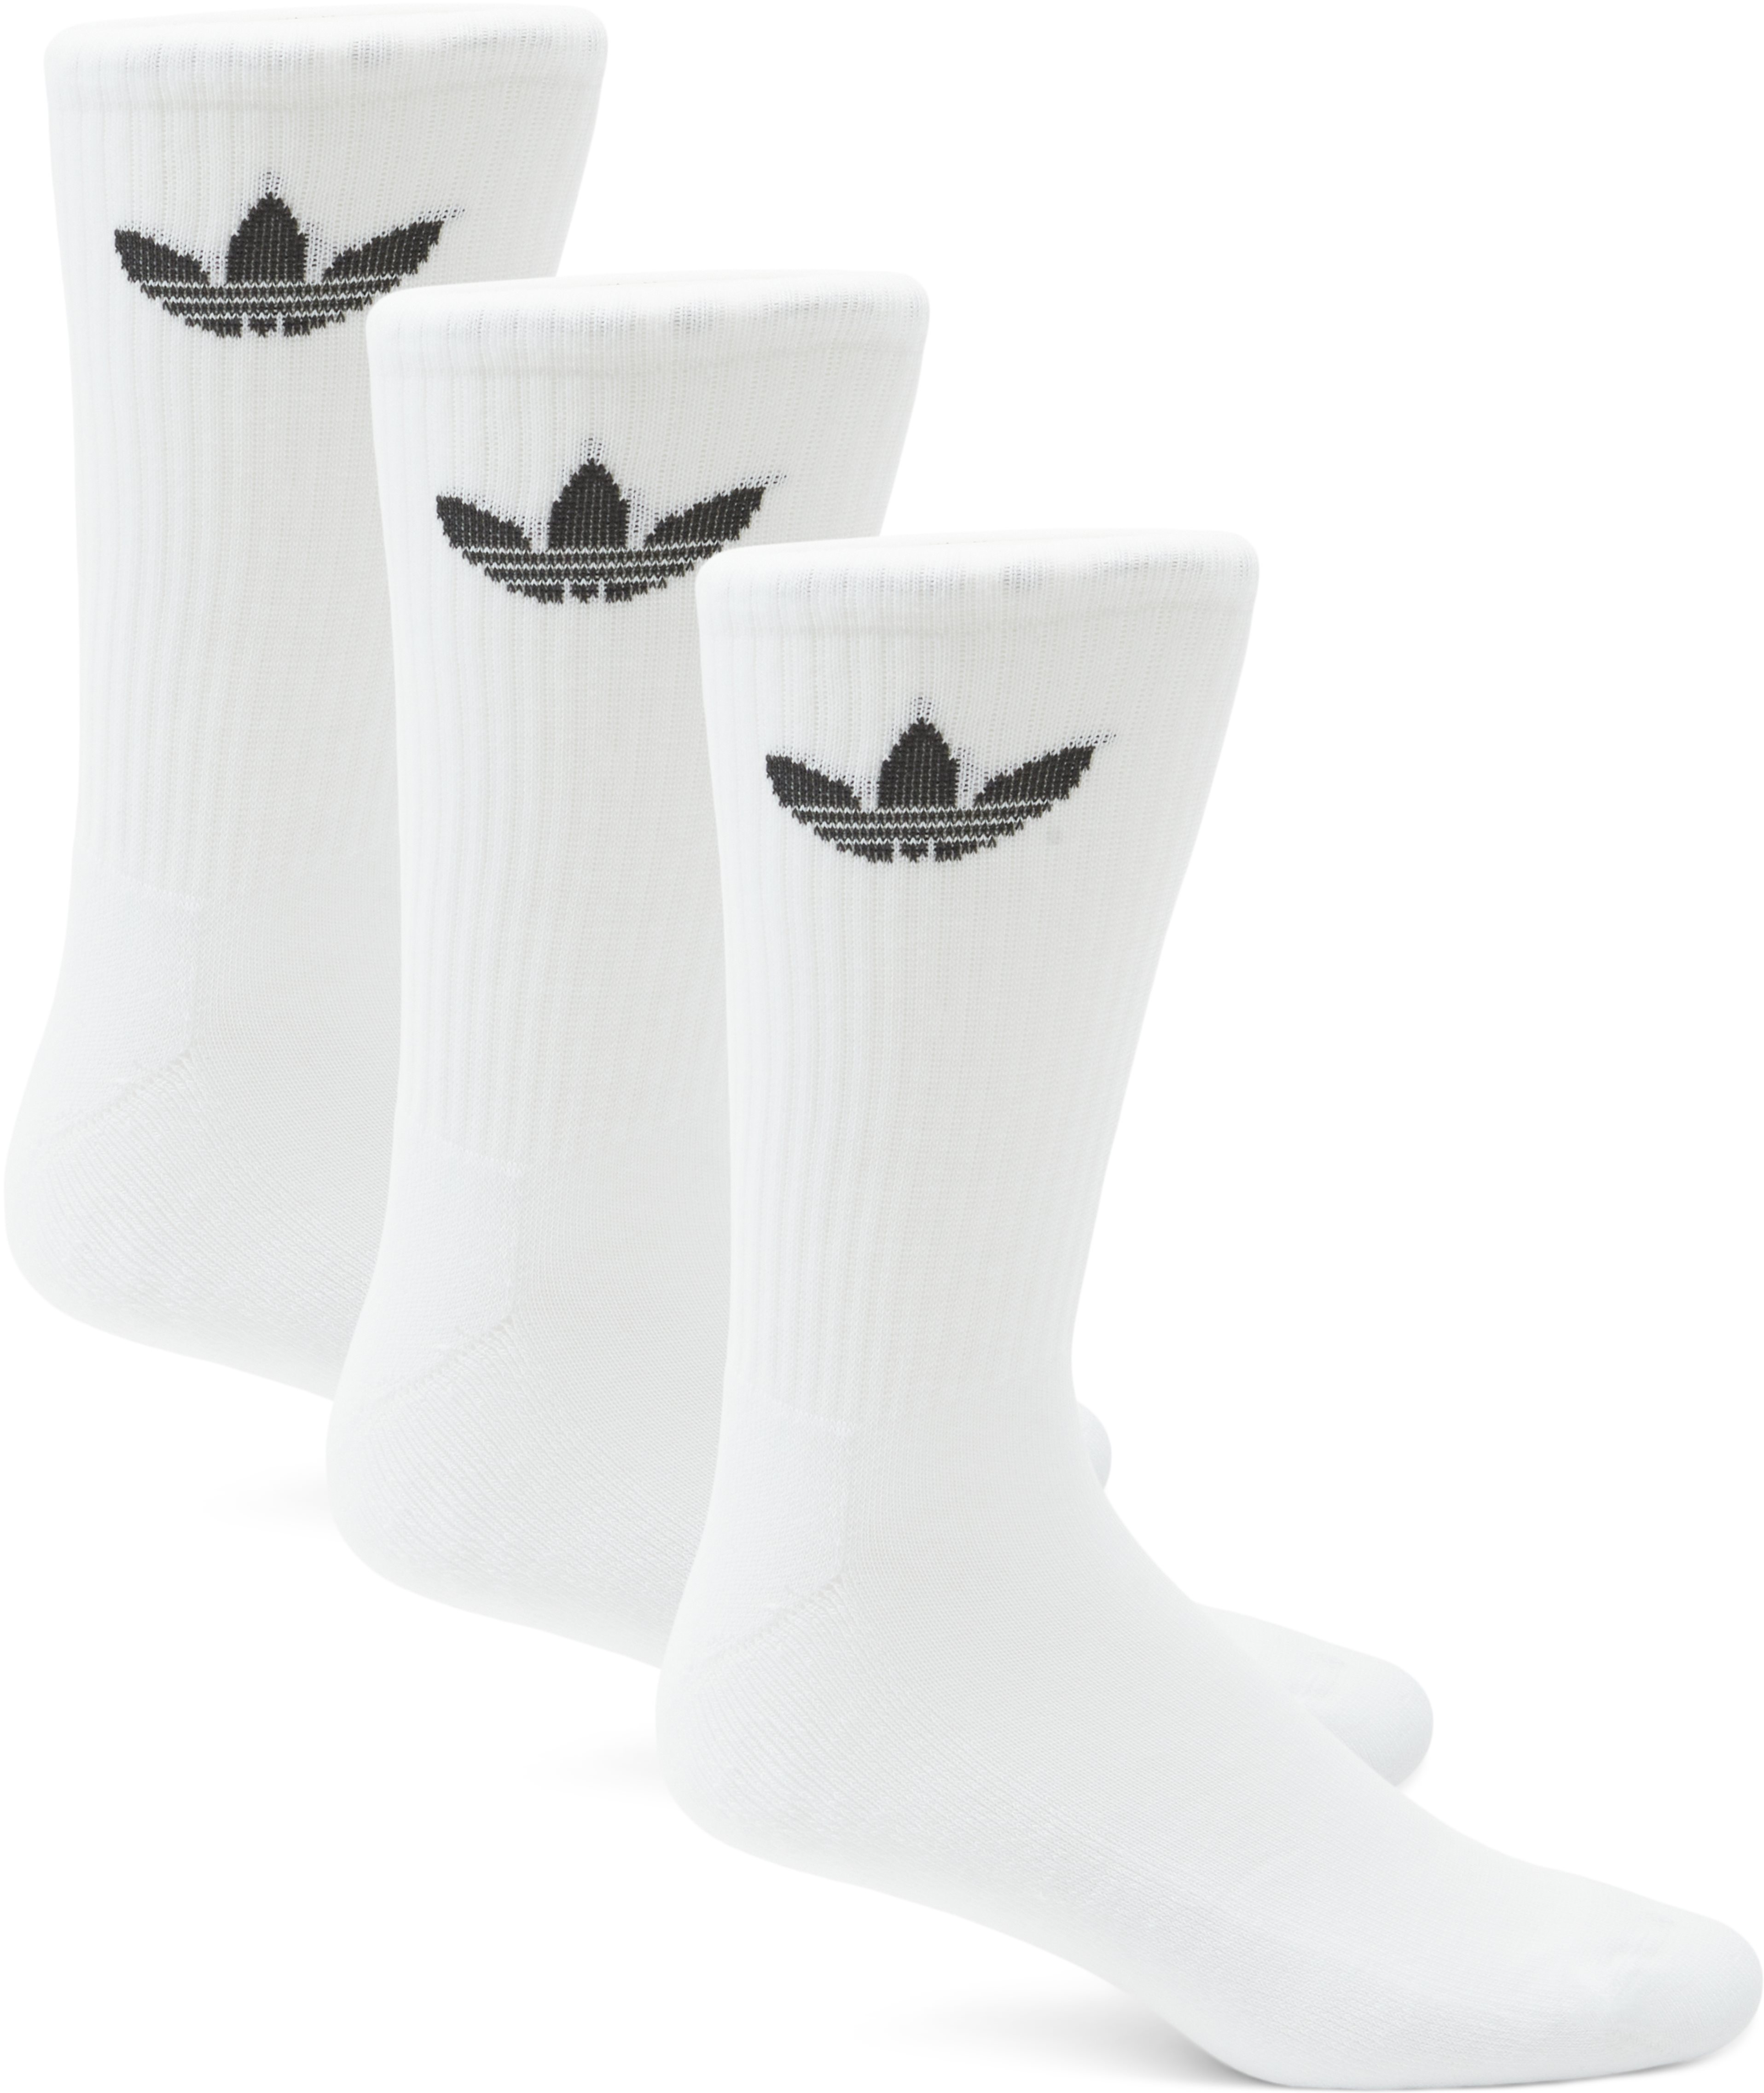 Custre Crw Sck Hb5881 - Socks - Regular fit - White